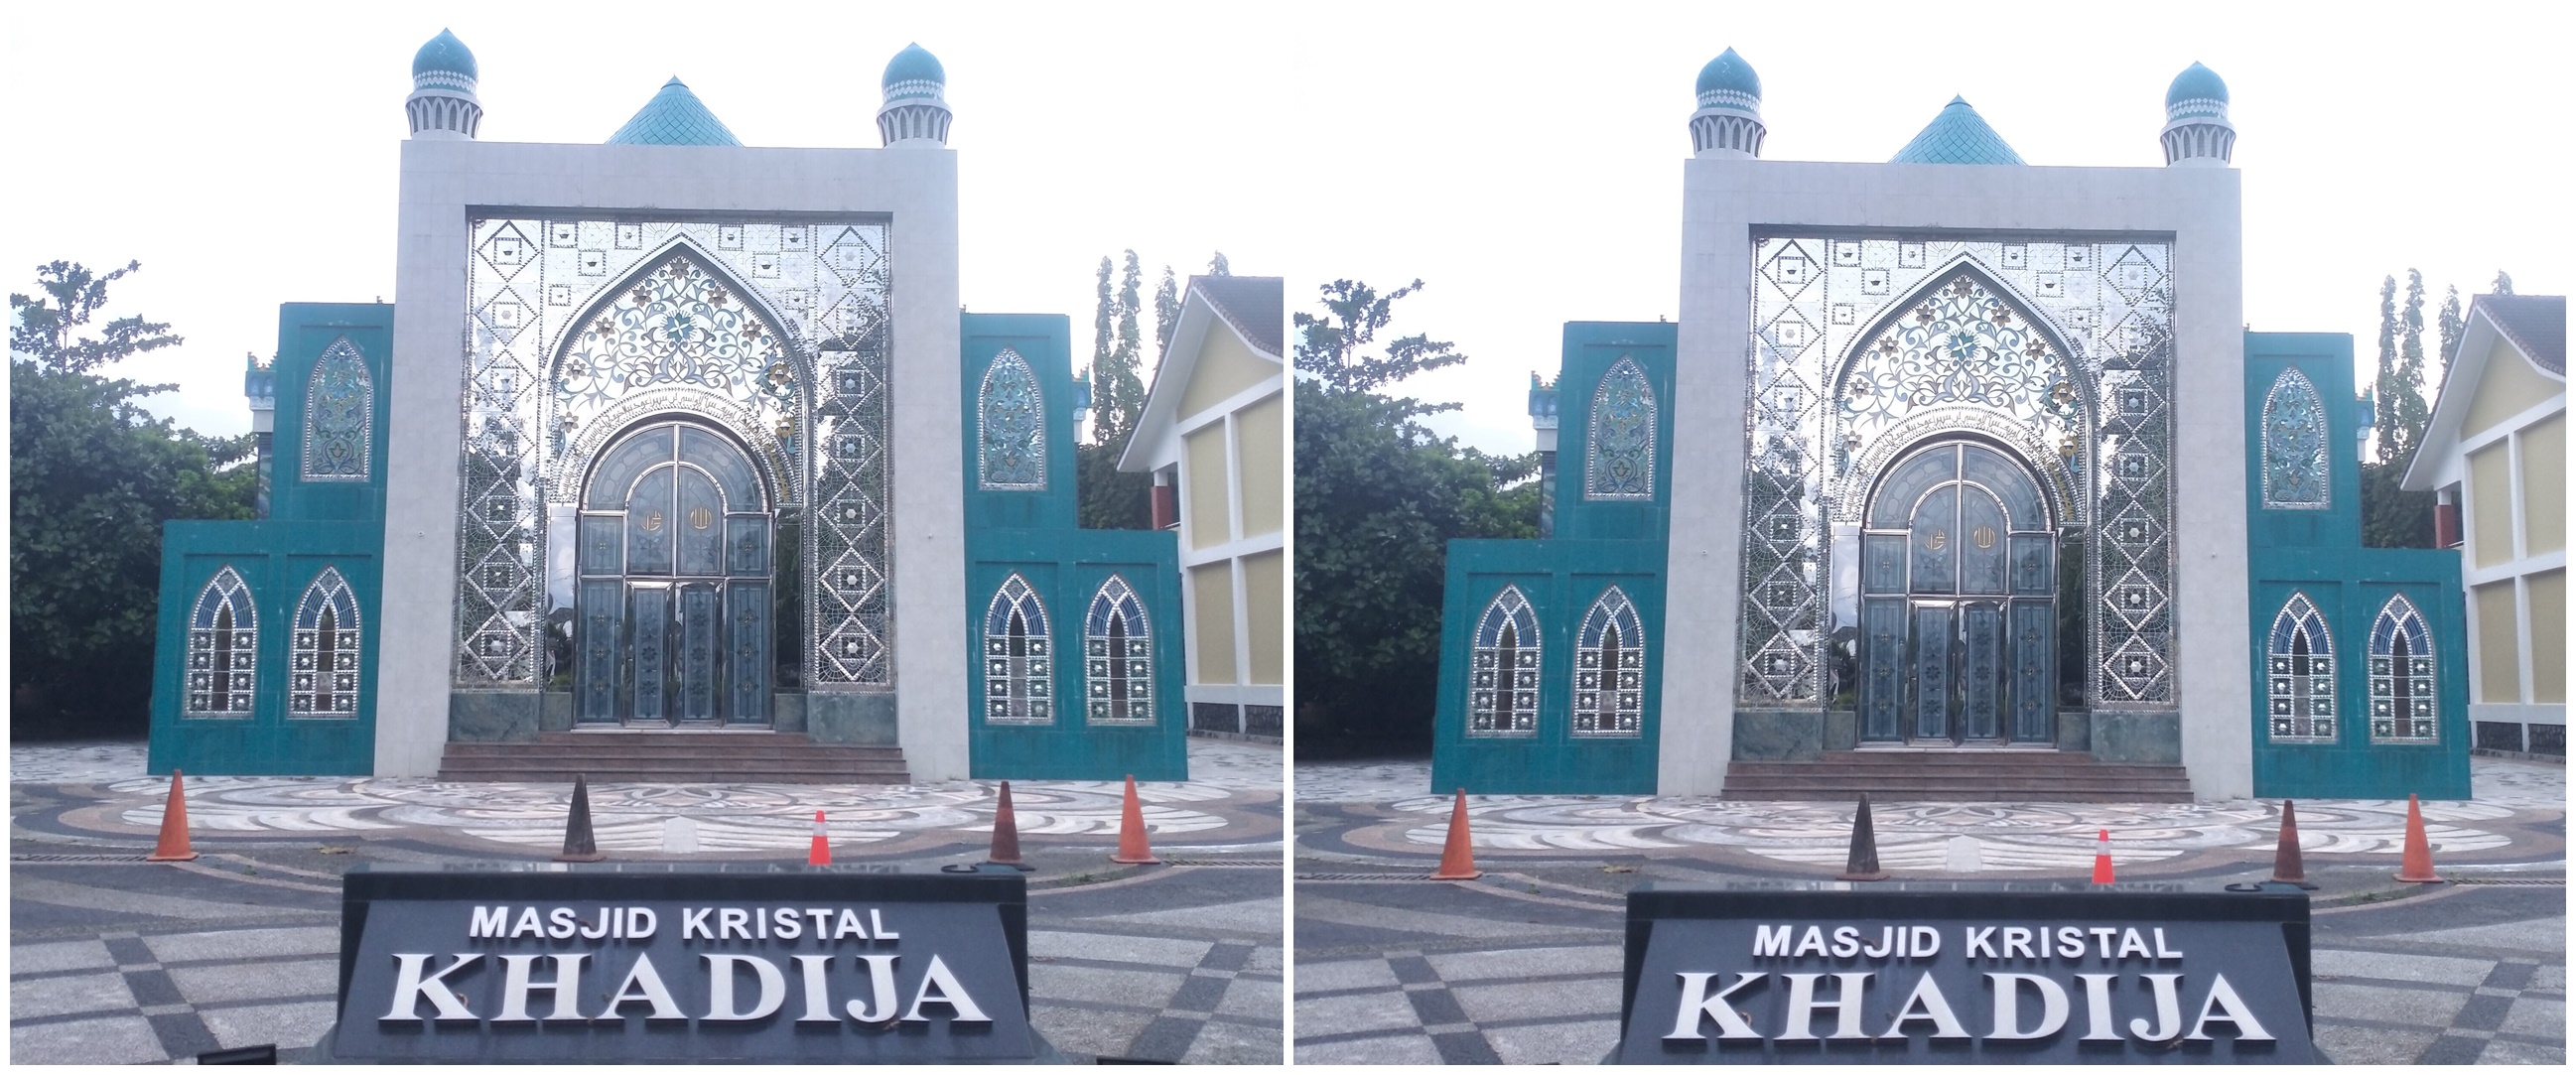 Masjid Kristal Khadija Yogyakarta, masjid mewah nan megah yang dibalut dengan ornamen kristal